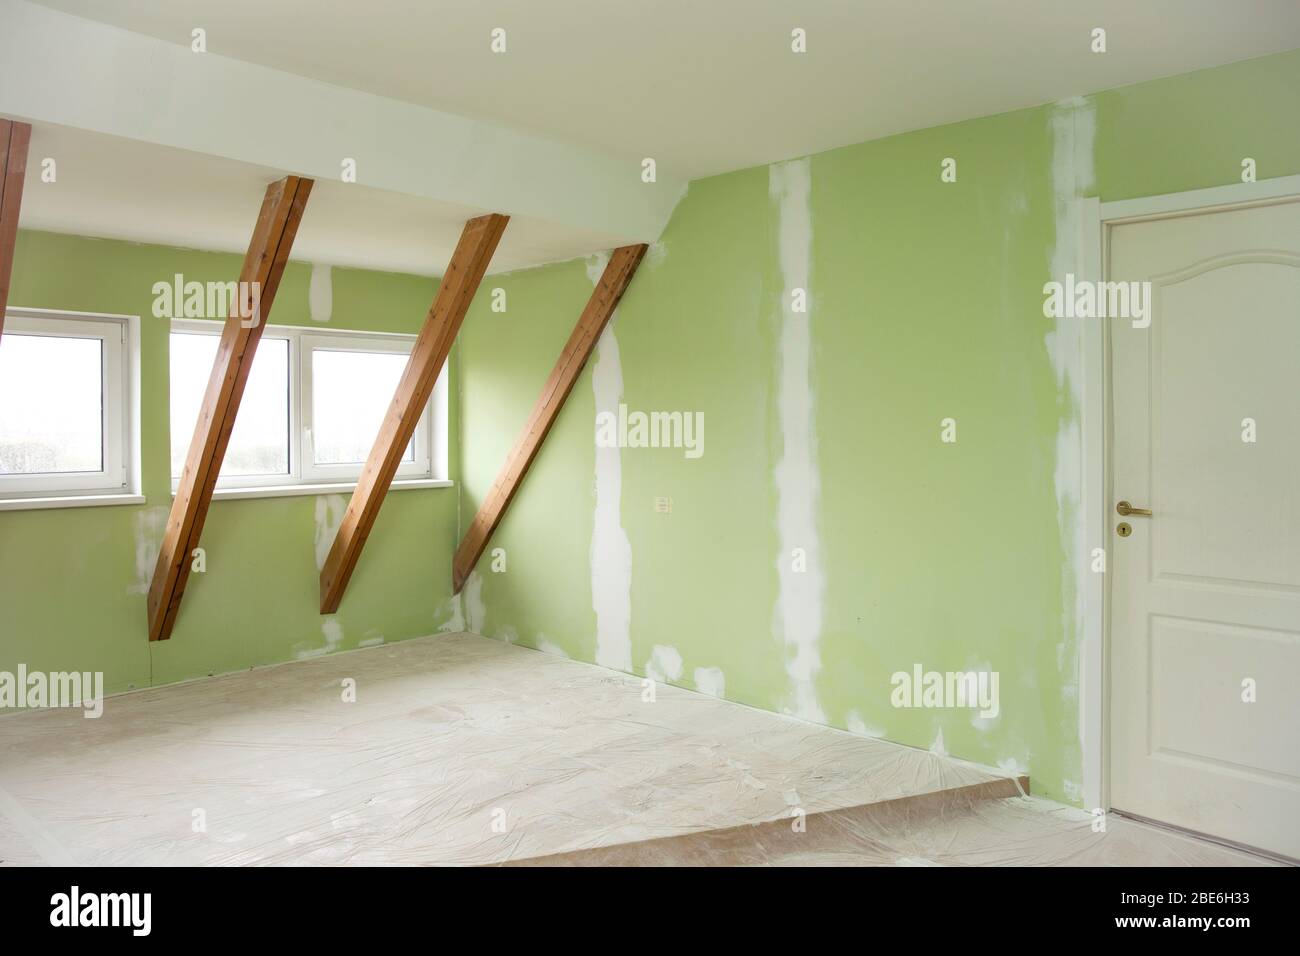 Travaux de rénovation de la maison en cours. Réparer les anciennes fissures de mur vert dans le mur avec la nouvelle putty blanche. Concept de rénovation de la maison. Banque D'Images